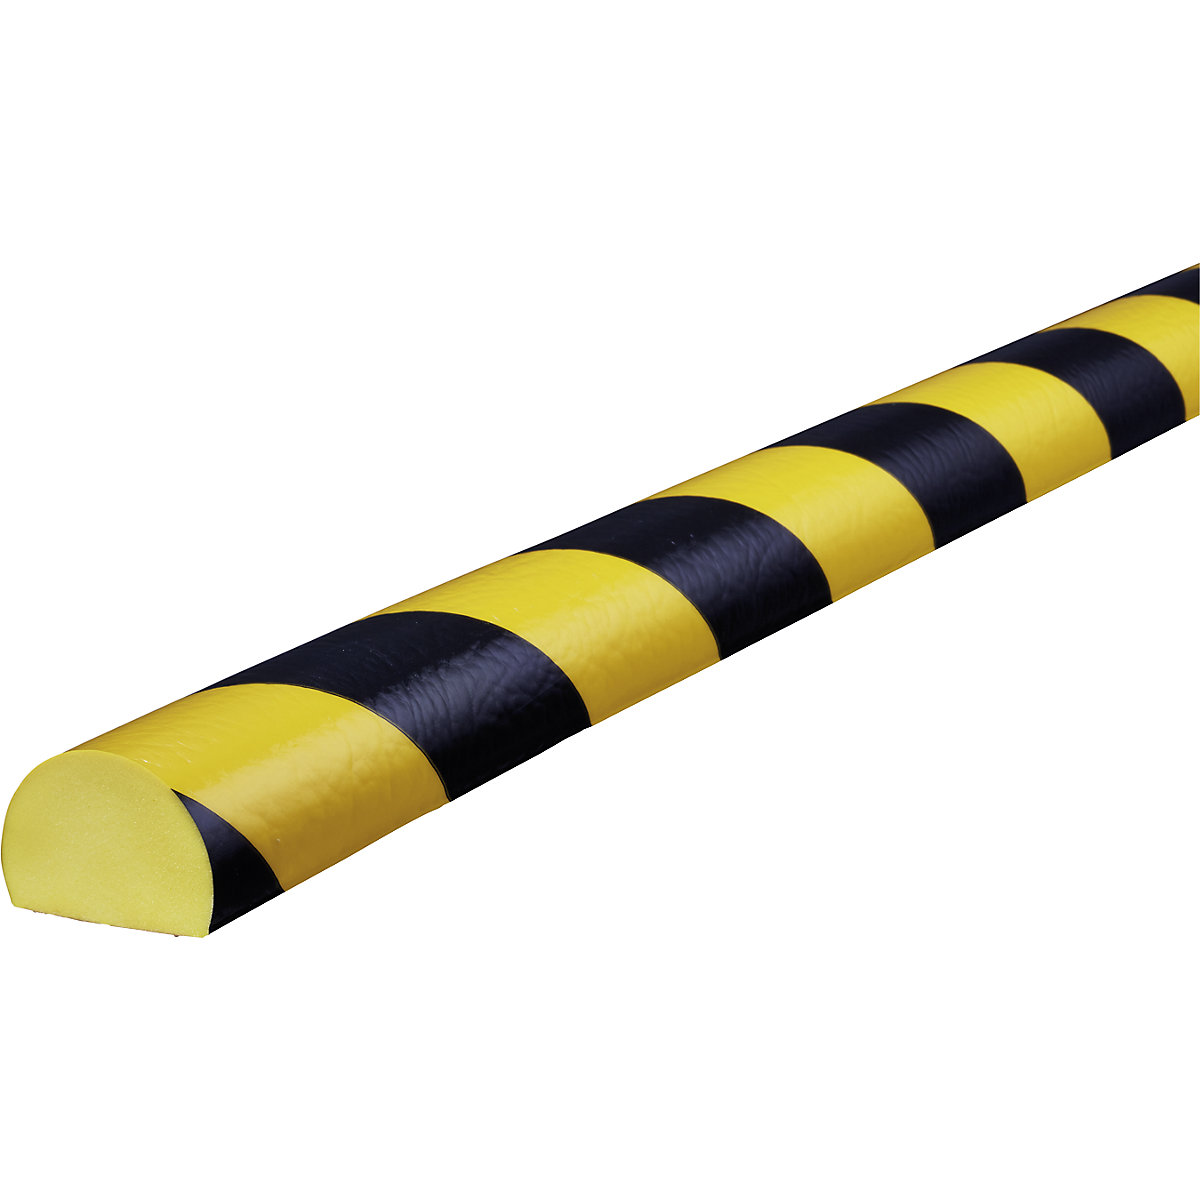 Protection des surfaces Knuffi® – SHG, type C, 1 rouleau de 50 m, noir/jaune